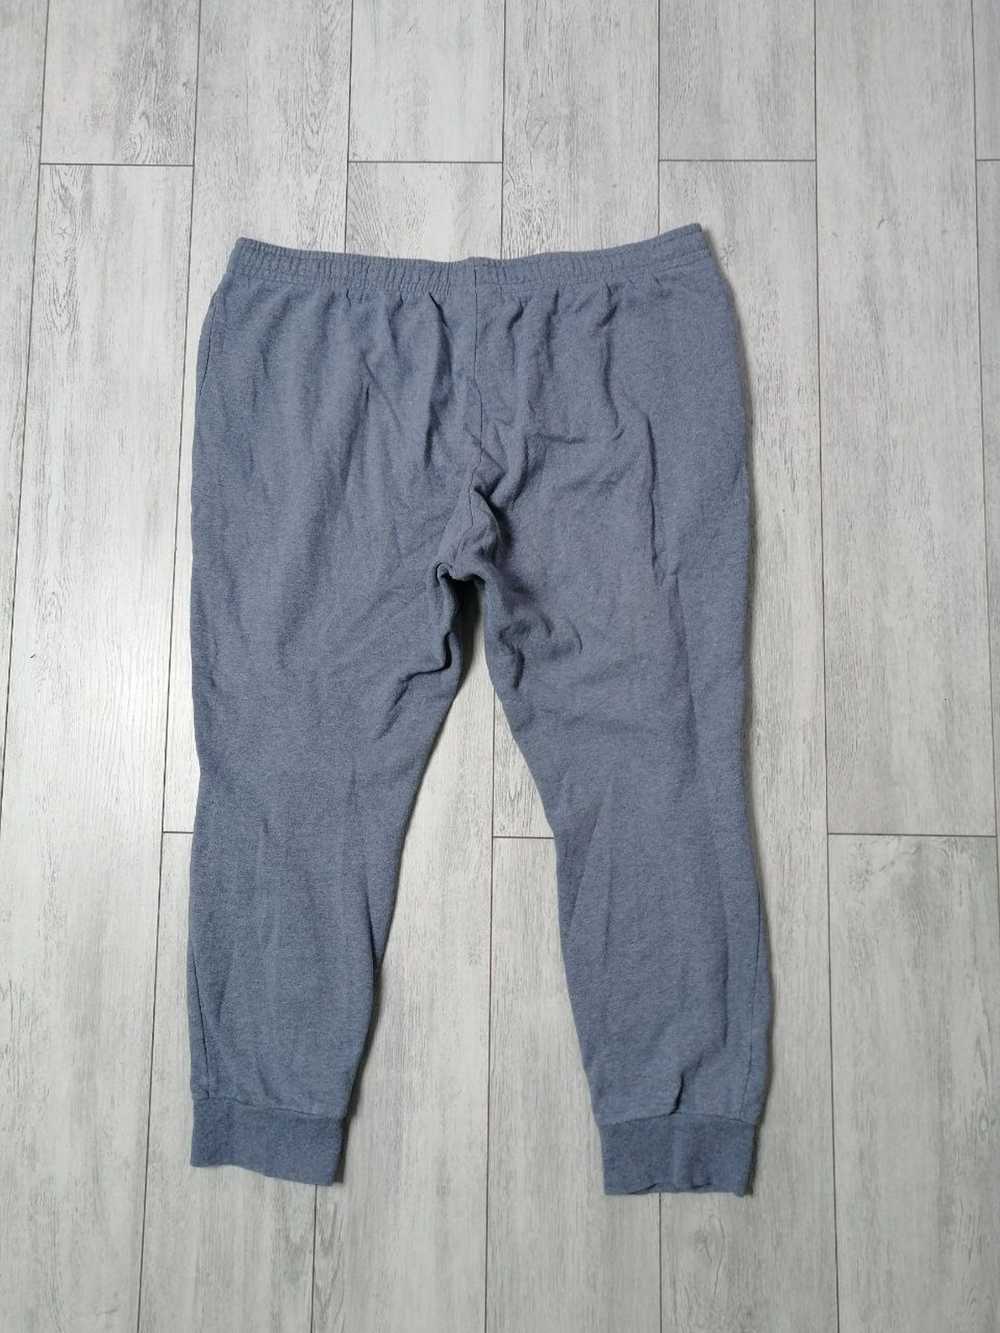 Lacoste Sweatpants Lacoste sport Size 2XL - image 4